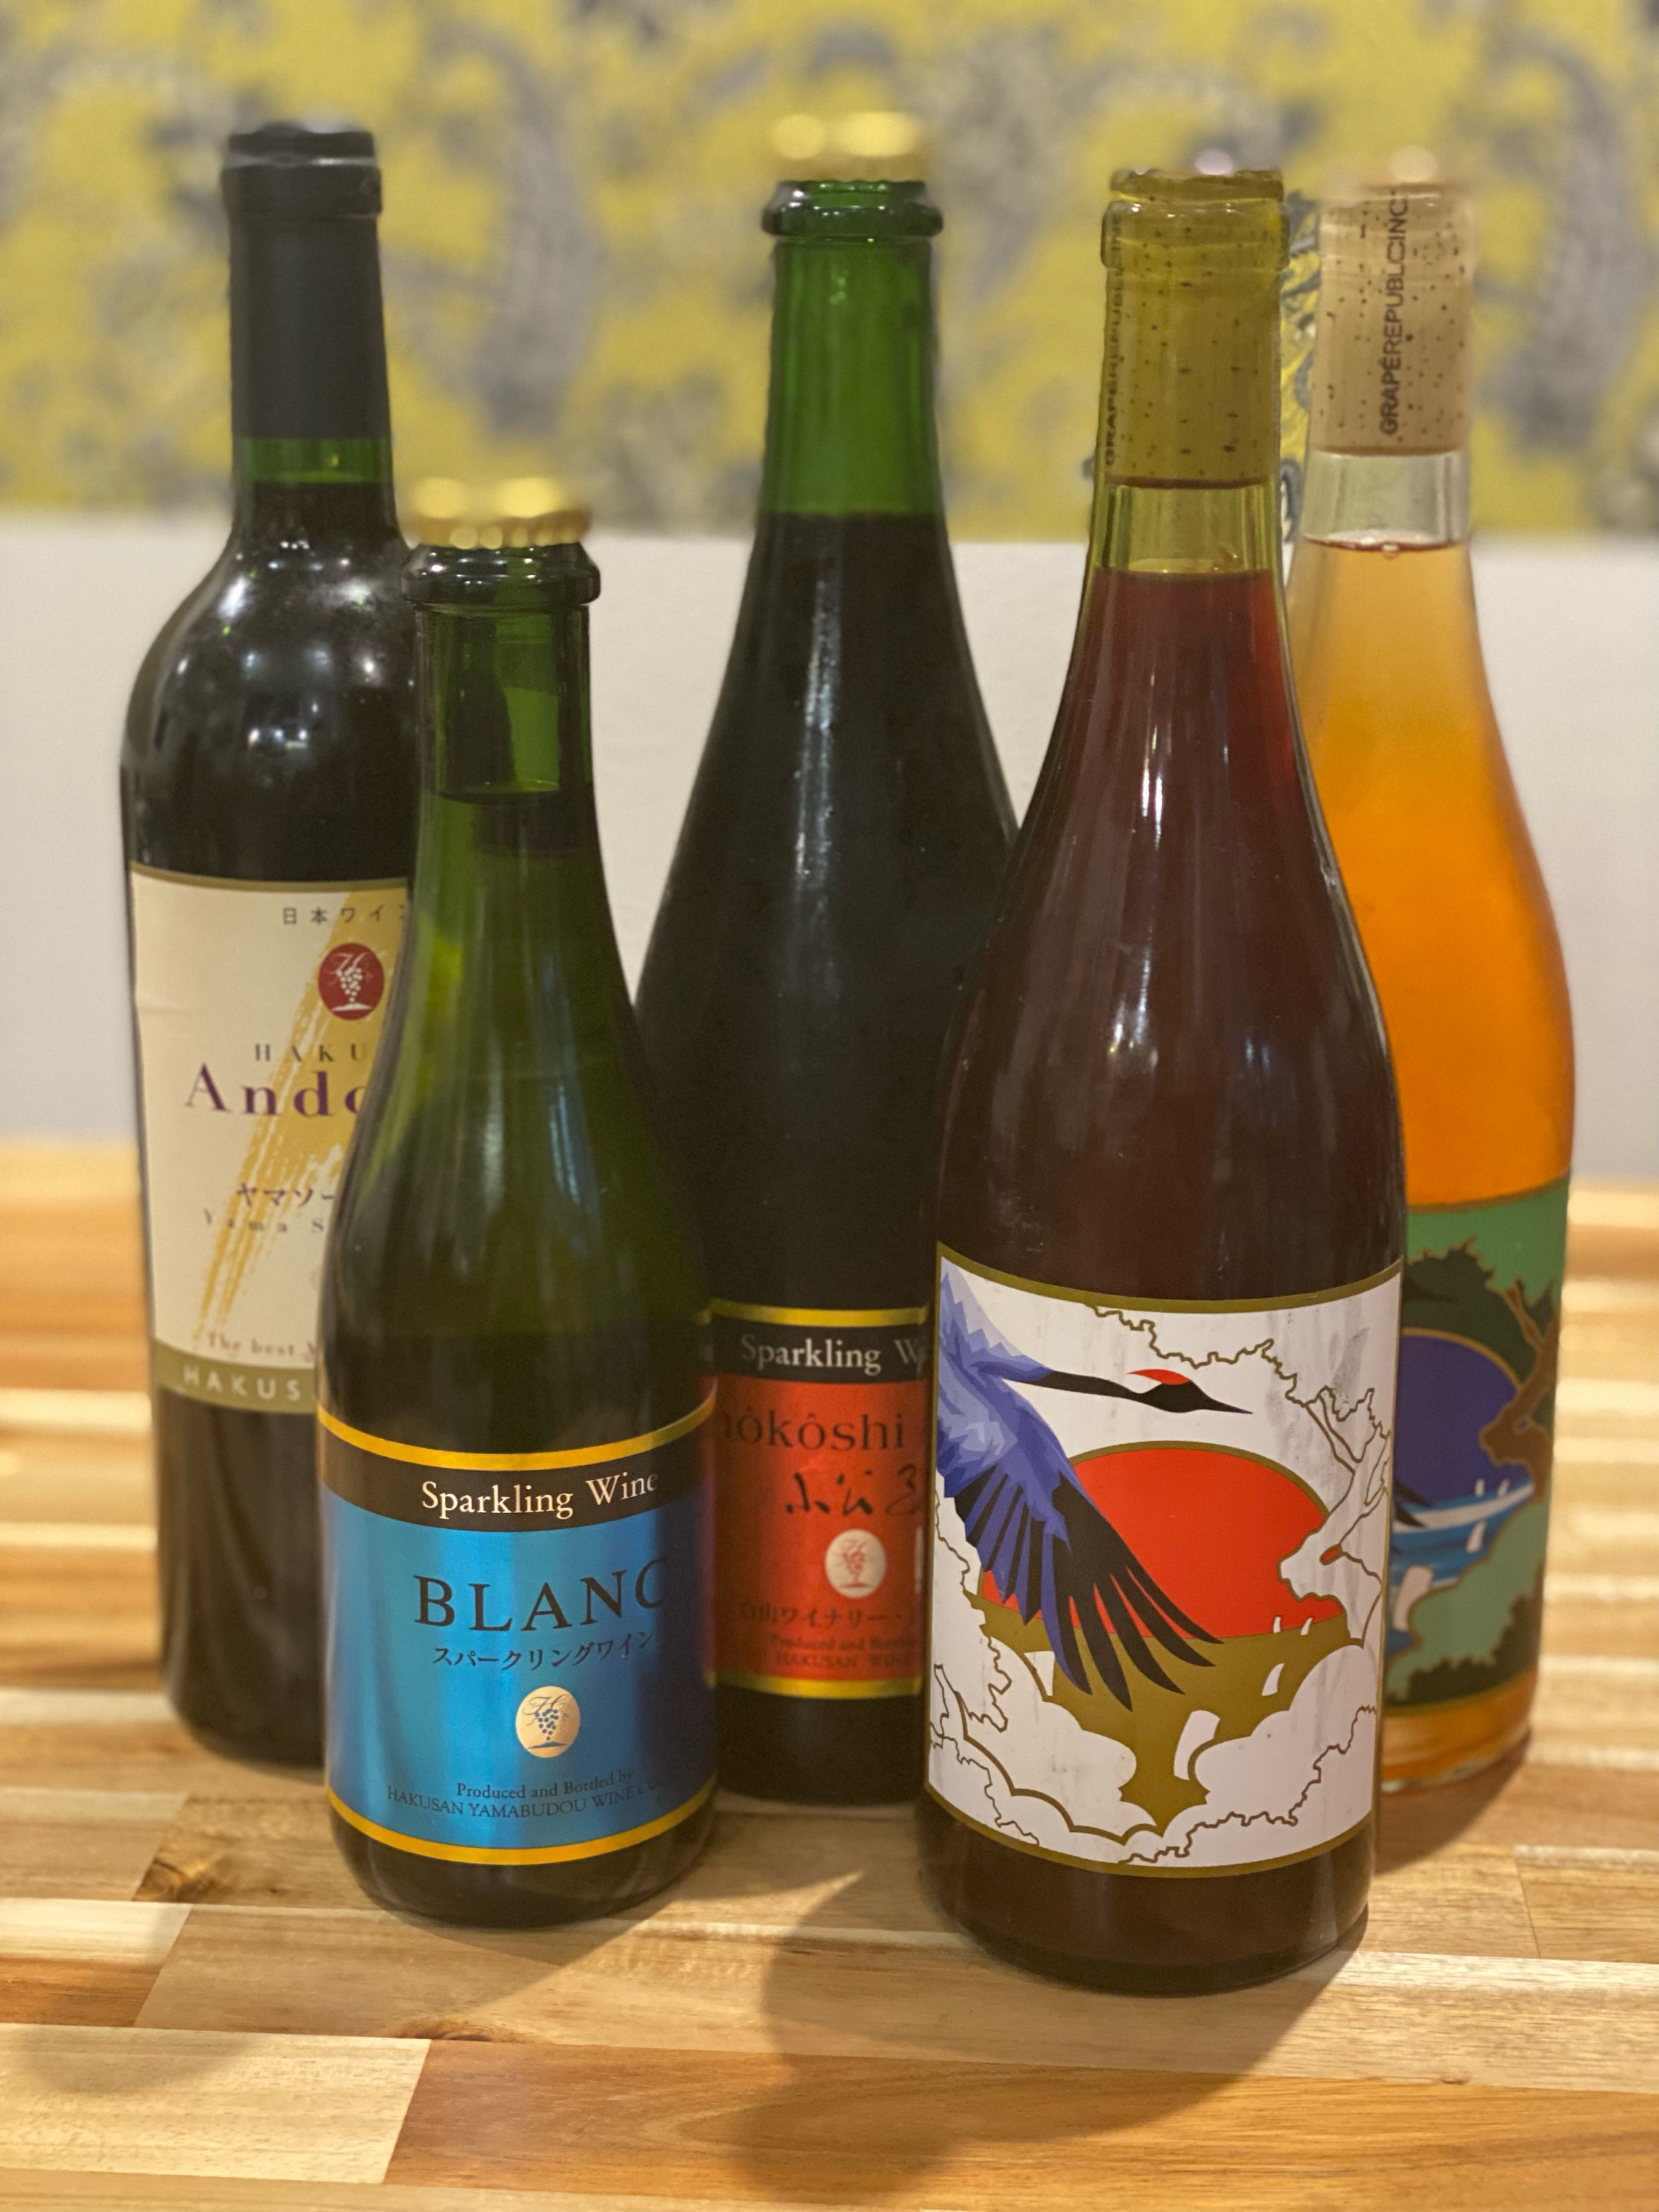 レストランでは福井のワイナリーのワイン他国産のワイン、イタリアのナチュラルワインを中心にお料理に合うお酒を多数ご用意しております。